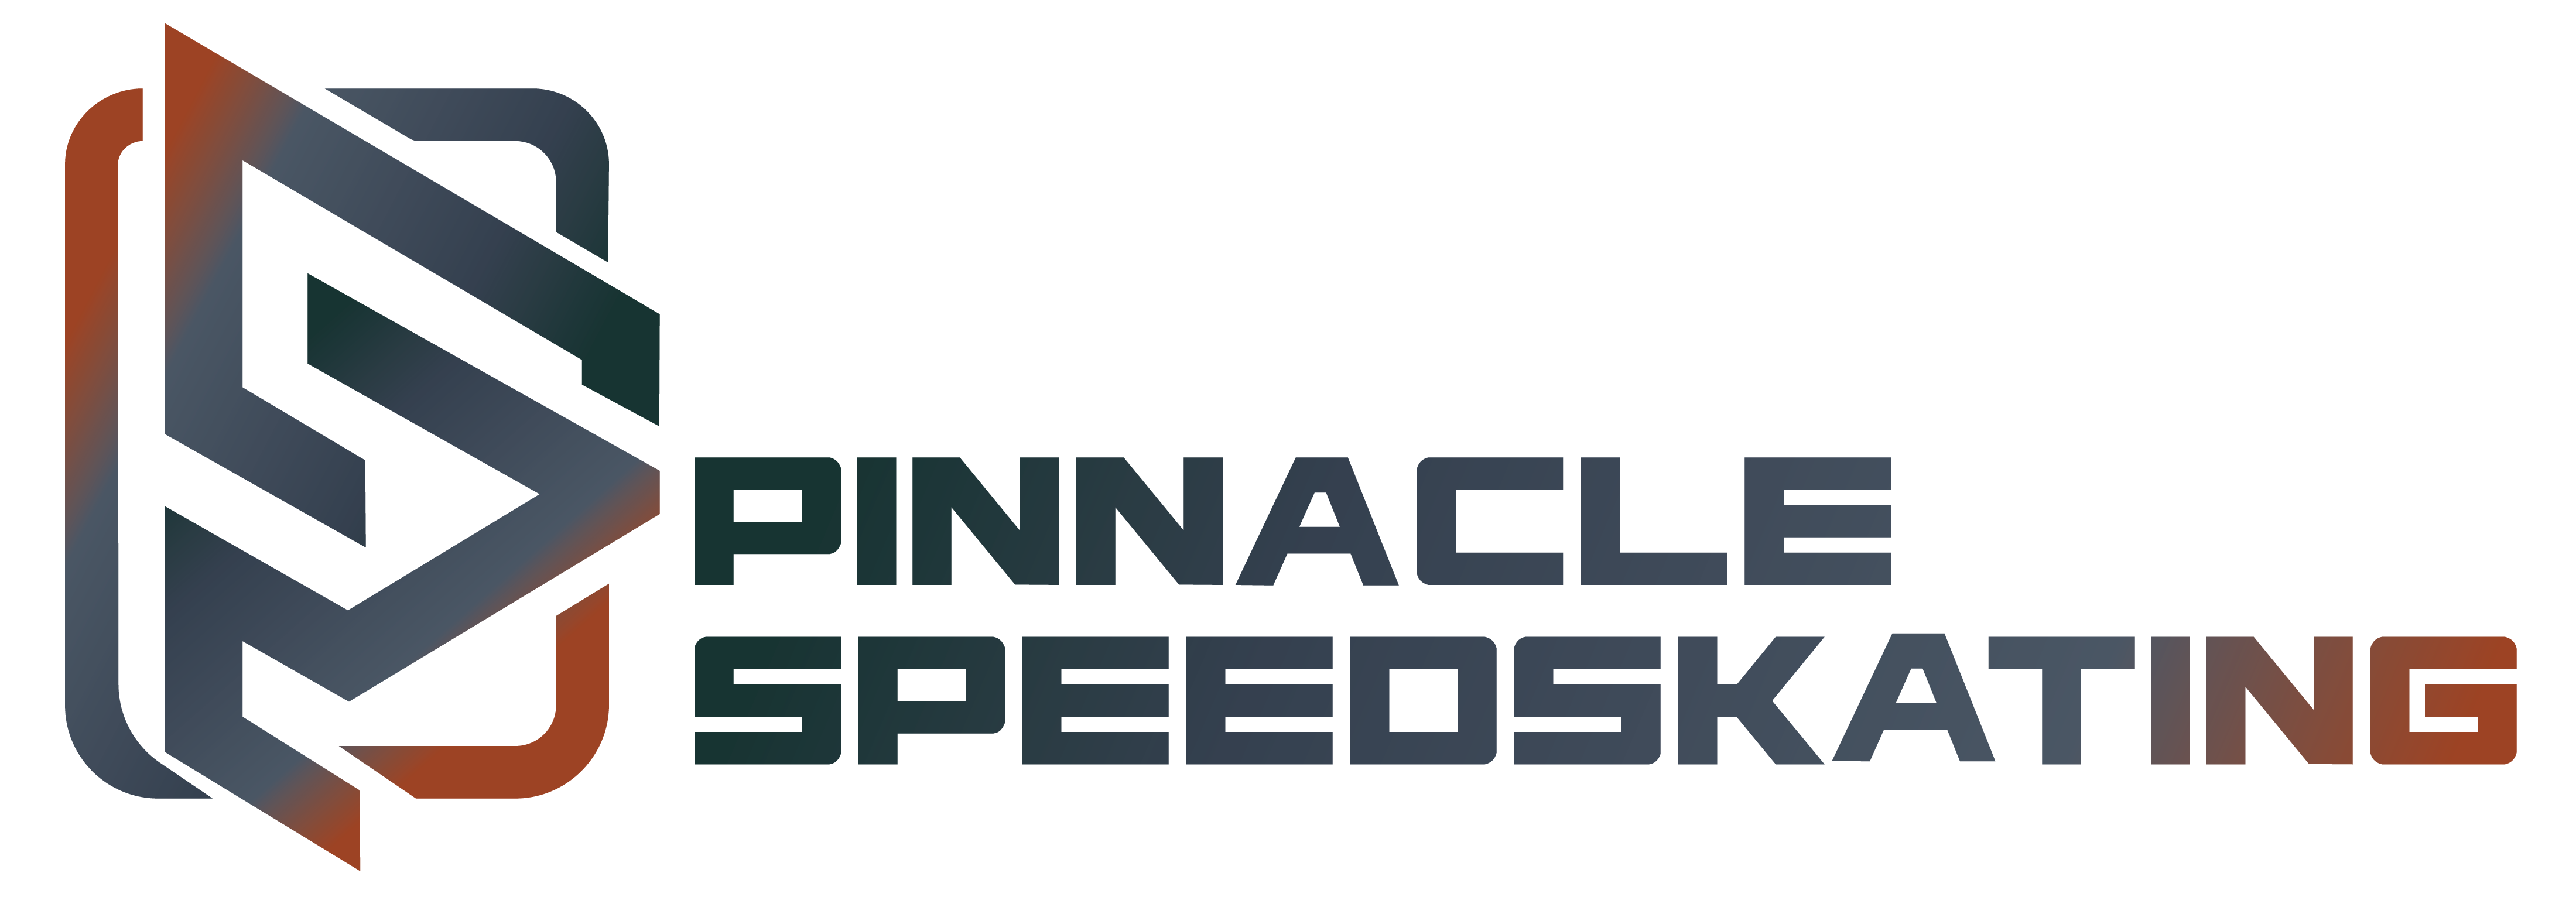 Pinnacle Speedskating Logo